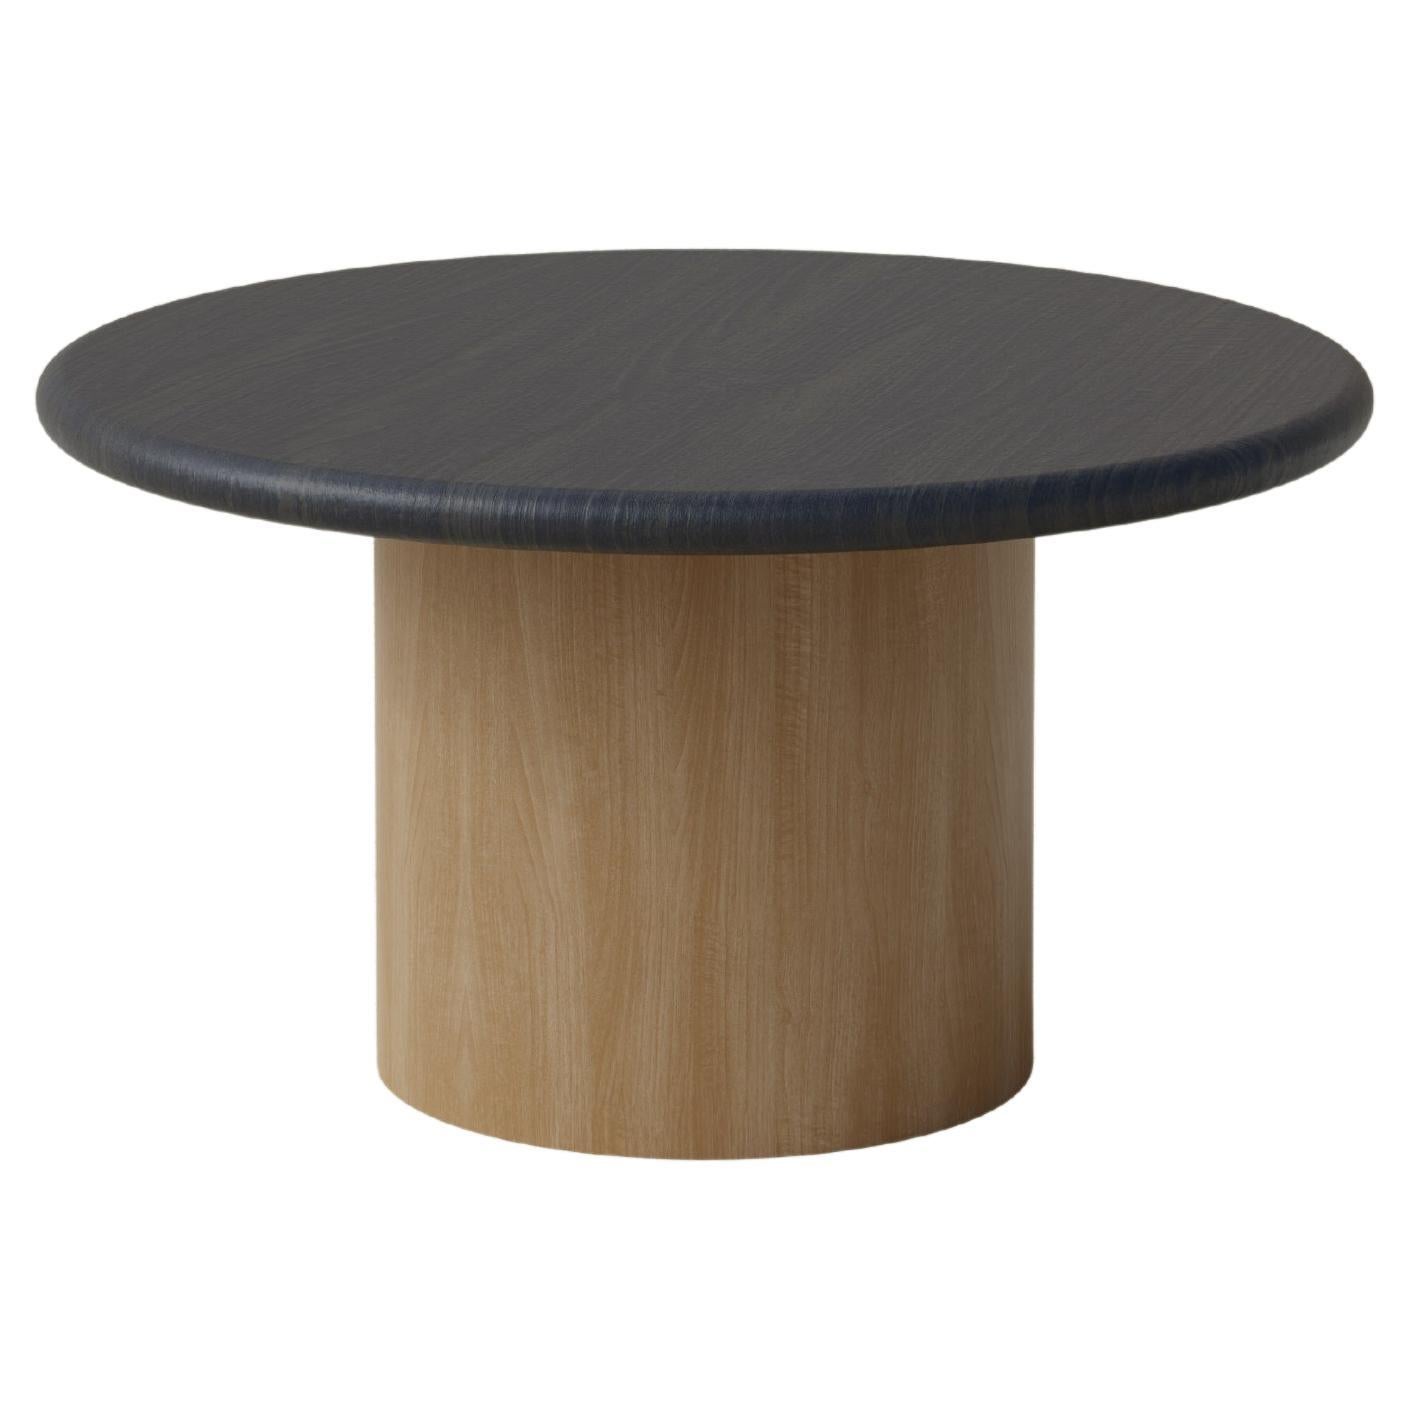 Raindrop Coffee Table, 600, Black Oak / Oak For Sale